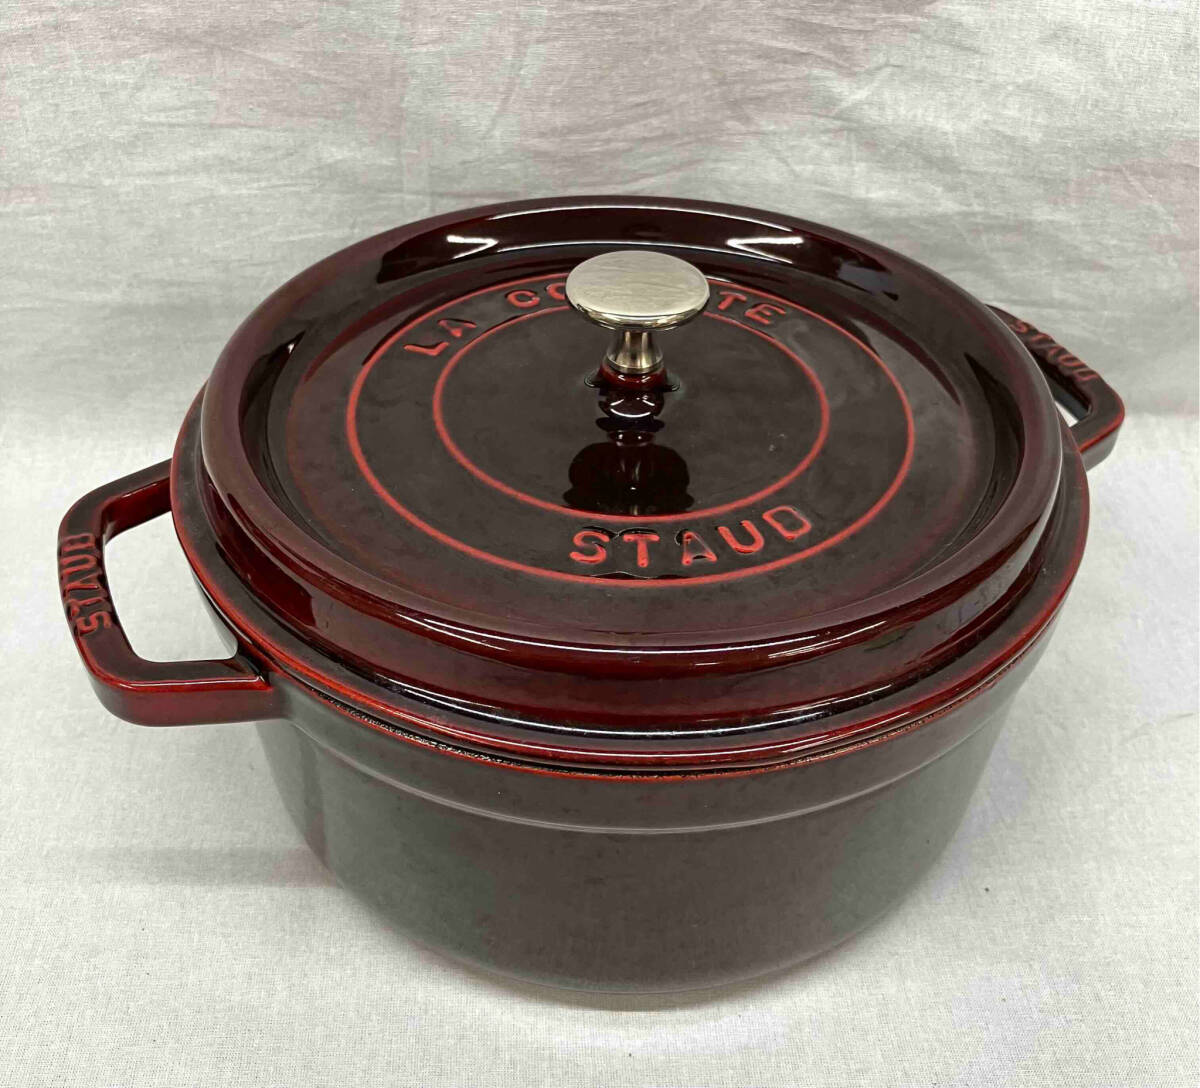 Staub LA COCOTTE ストゥブ ココット 両手鍋 鋳物 ホーロー鍋 ブラウン 調理器具 キッチン 使用感有 24cm フランス製